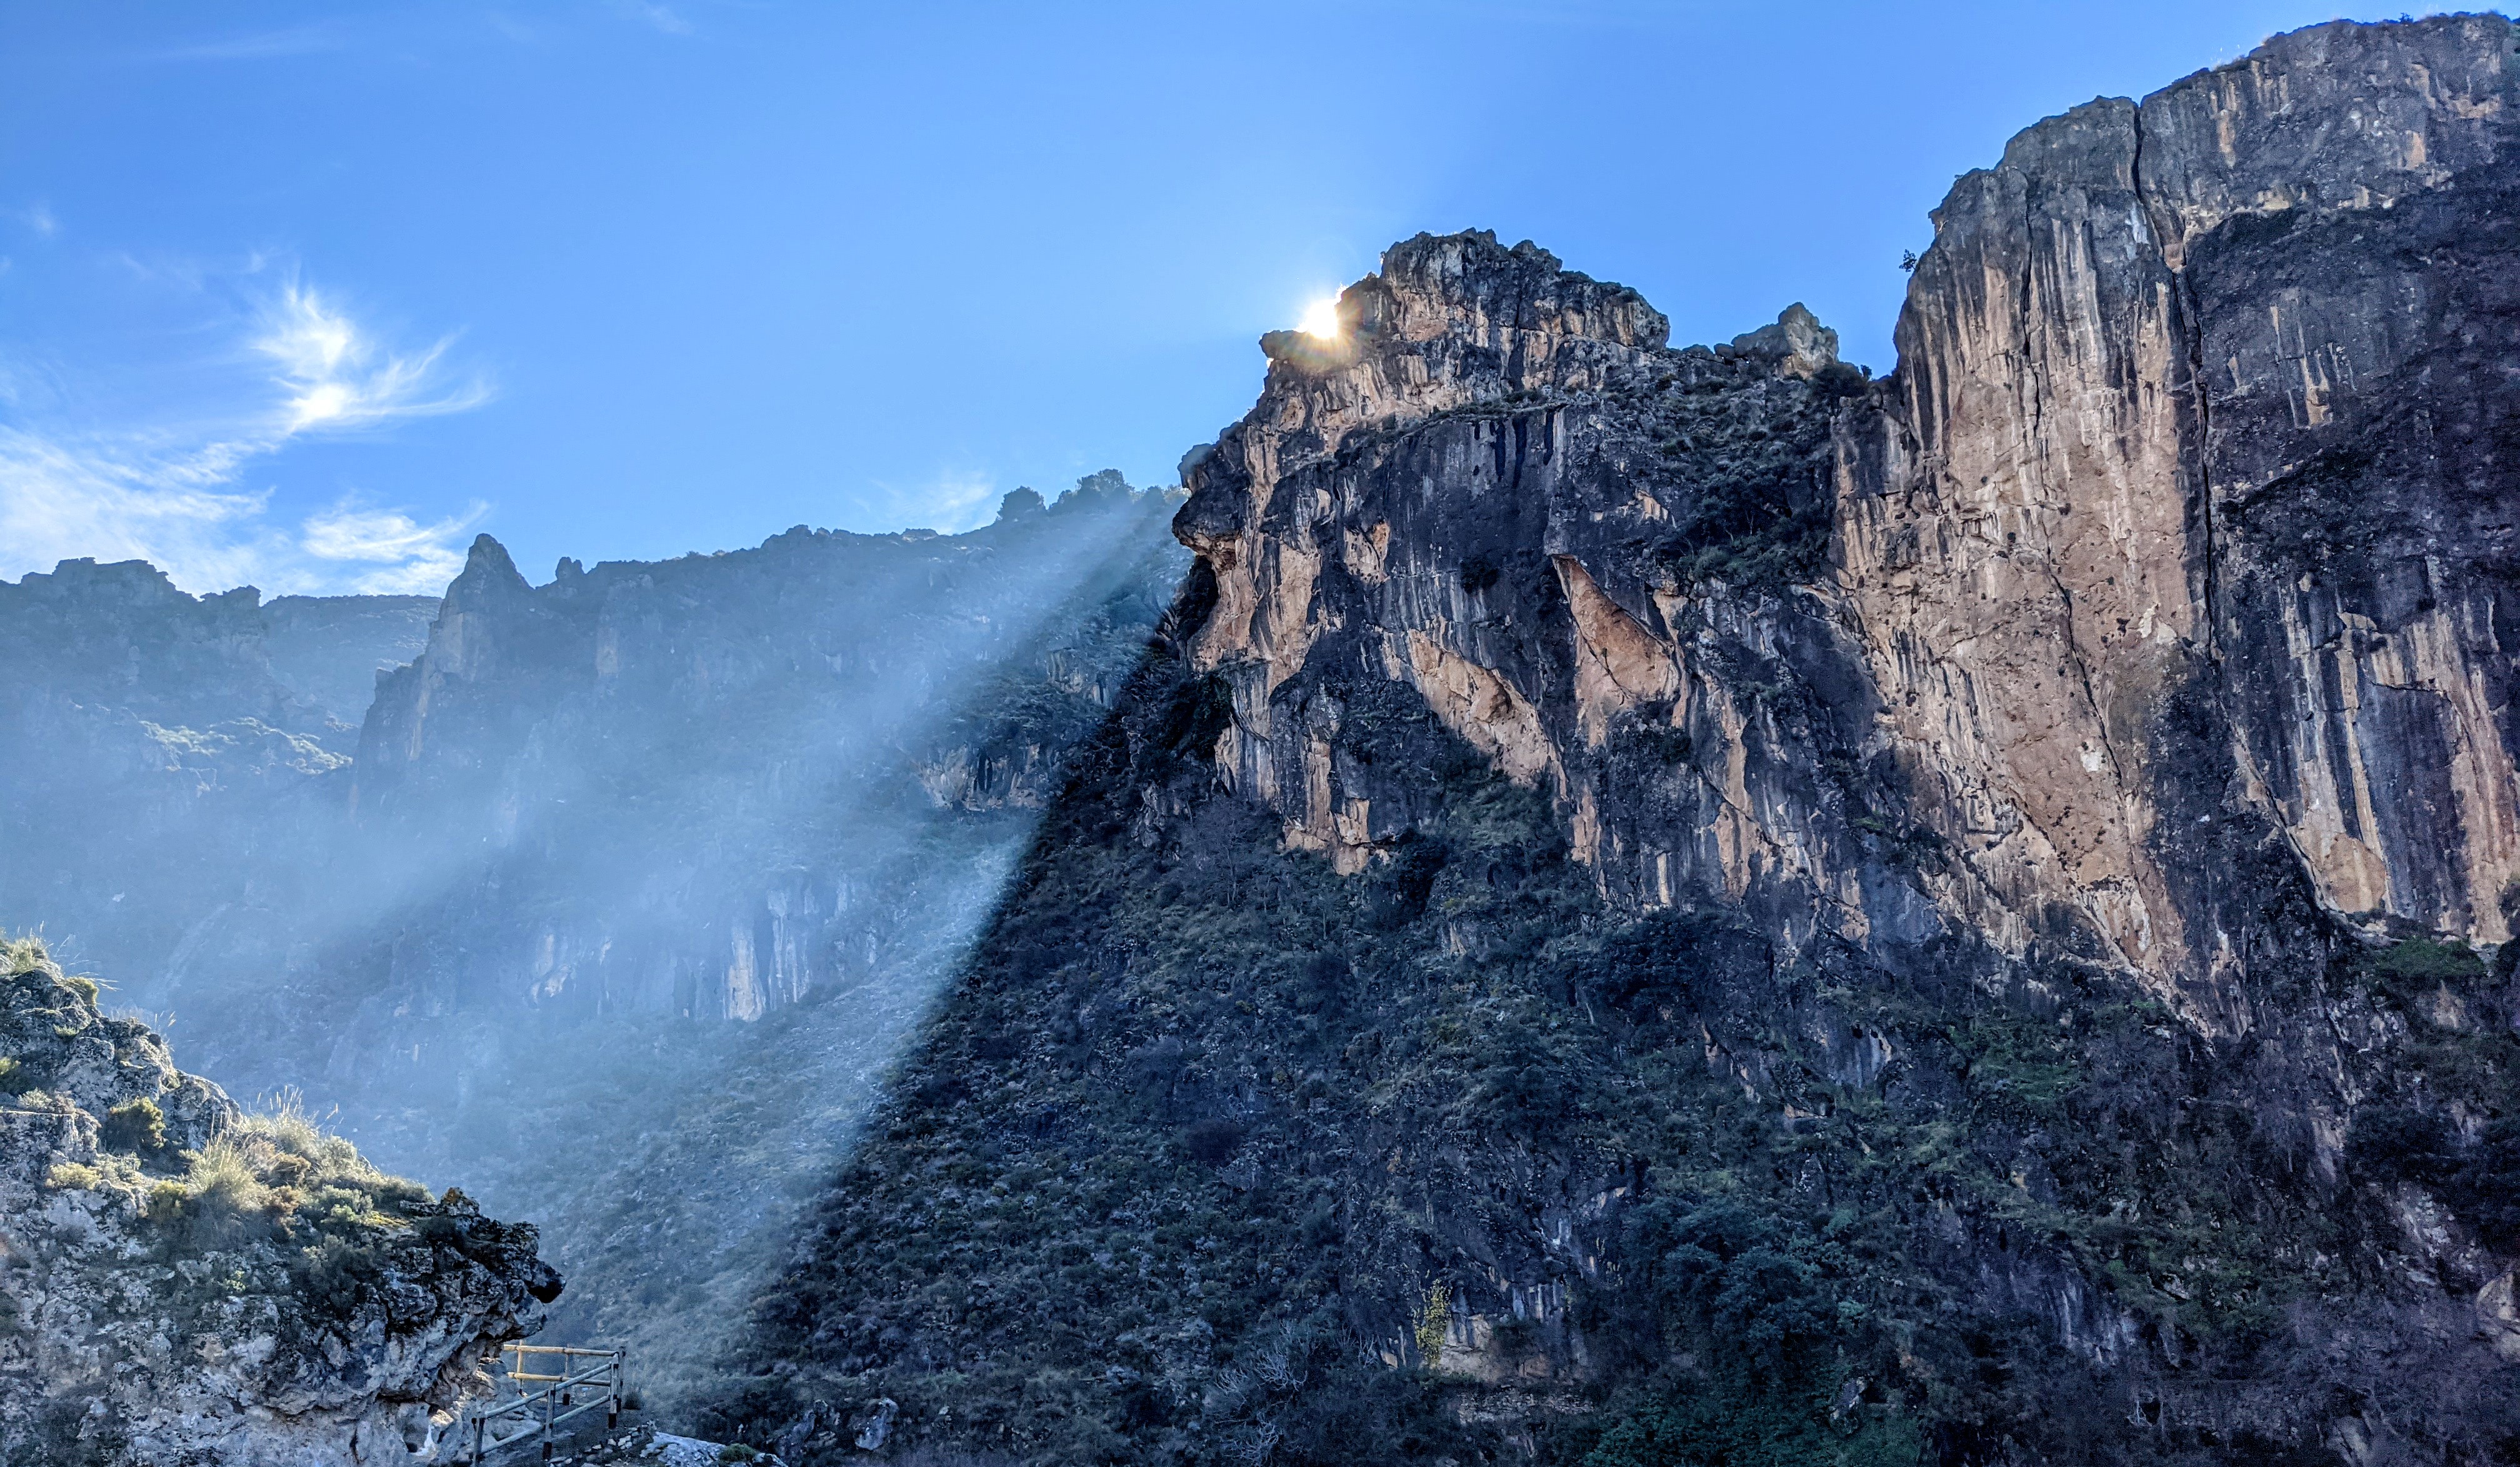 The cliffs of Los Cahorros, a climbing crag in Granada